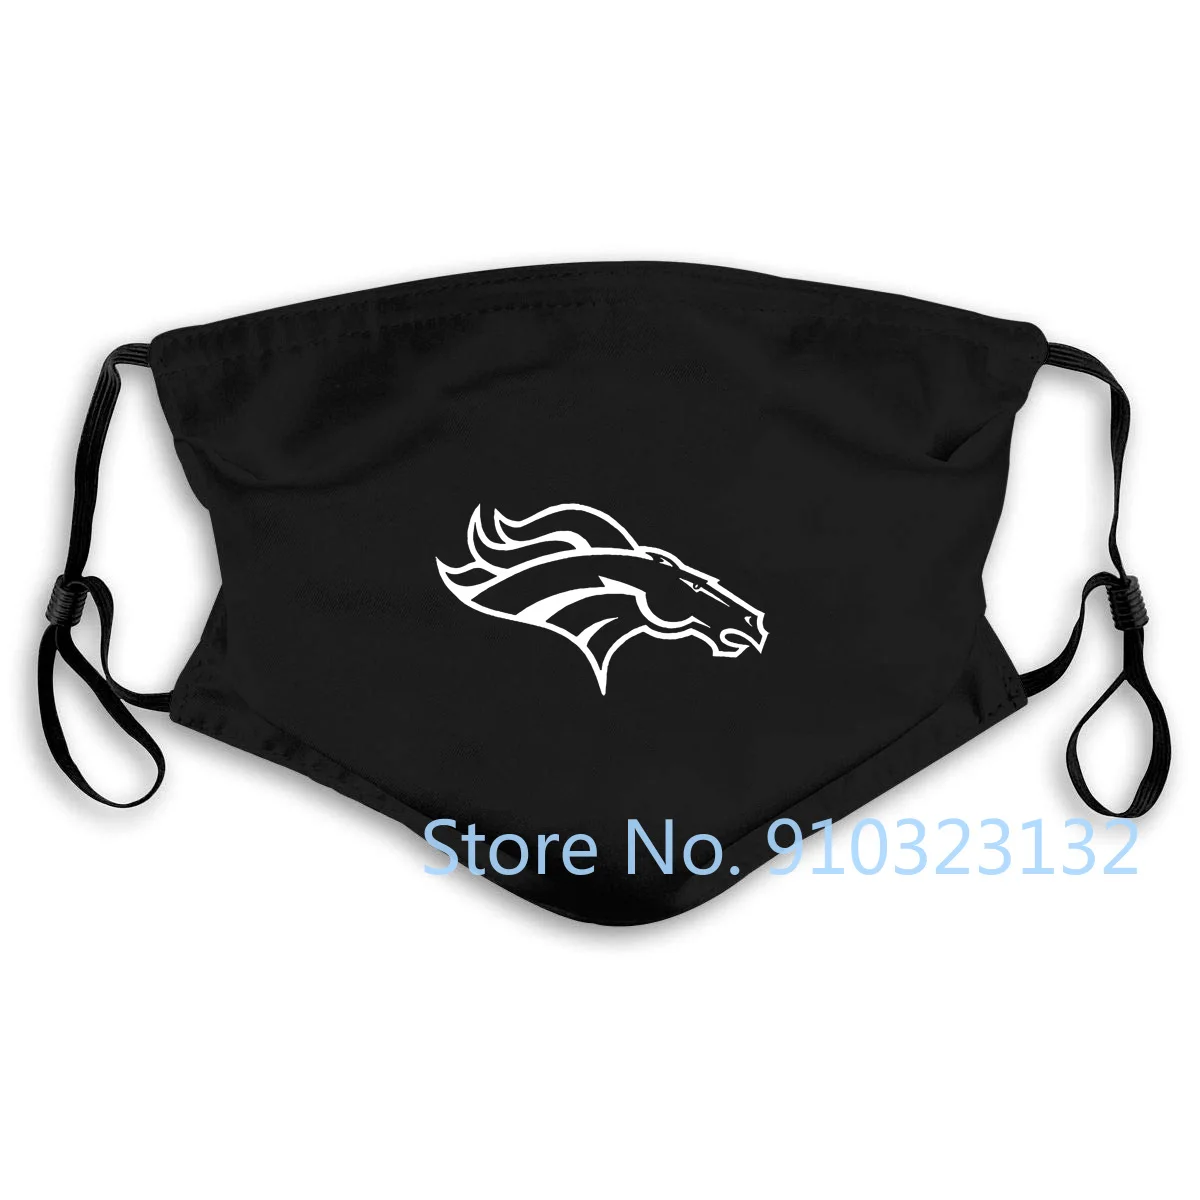 Черная классическая маска с логотипом Broncos стиль Денвер футбол Бронко все